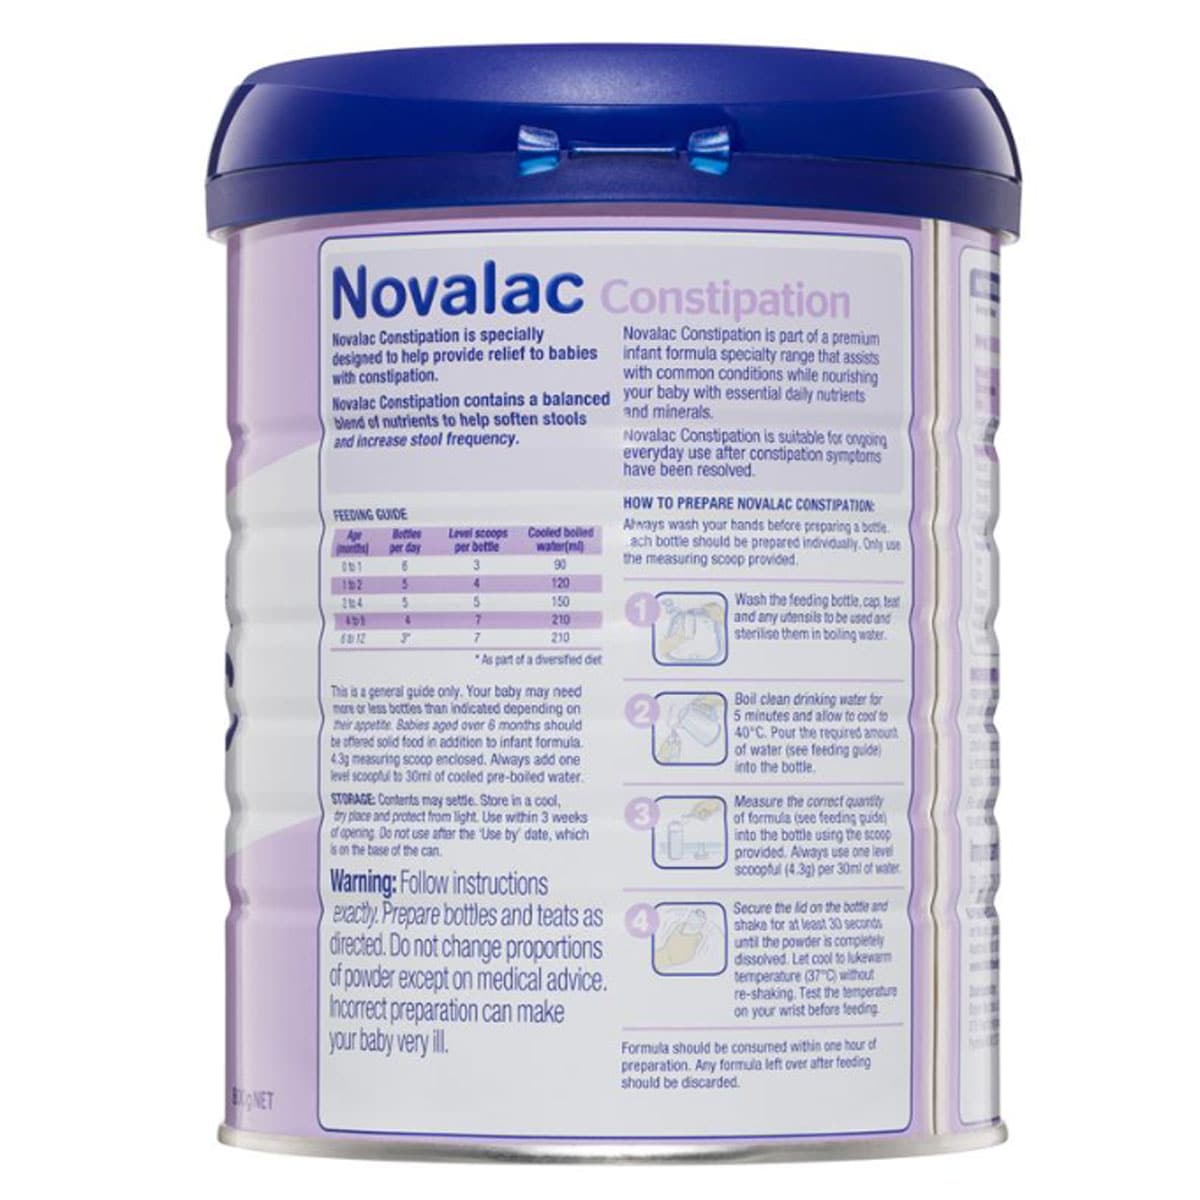 Novalac Constipation Infant Formula 800G